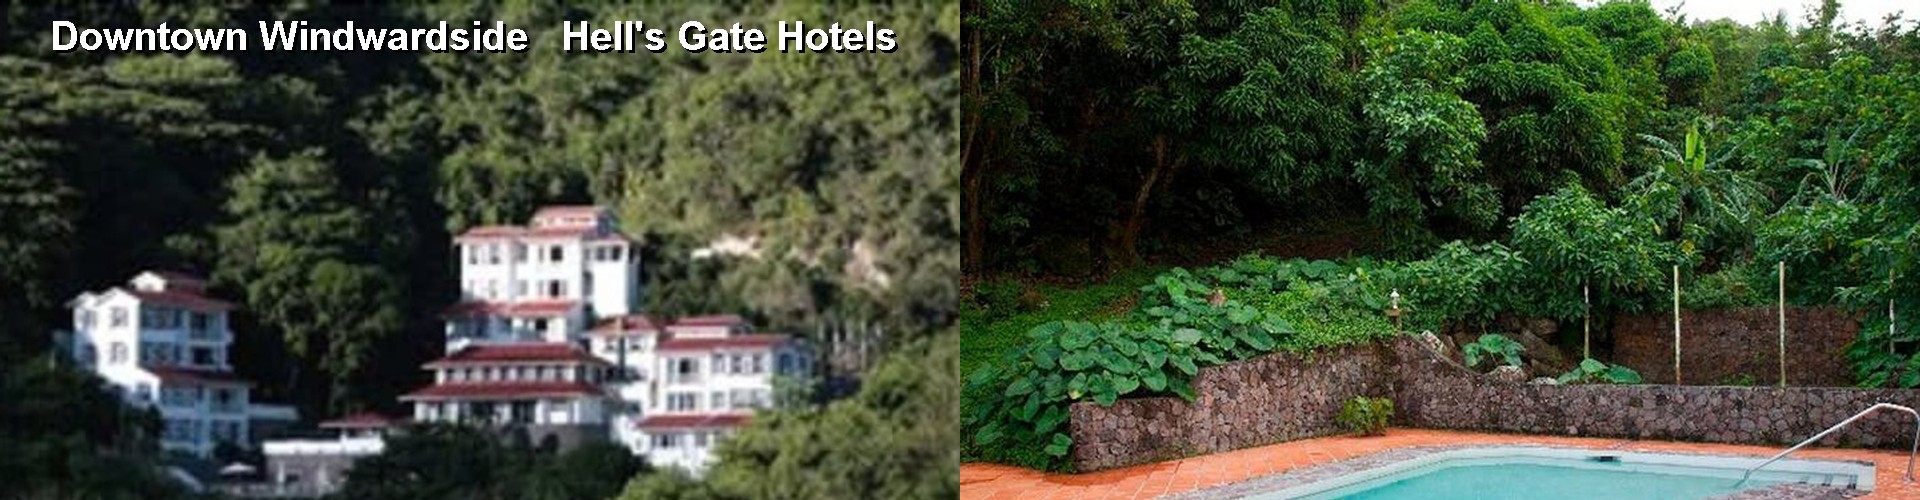 5 Best Hotels near Downtown Windwardside   Hell's Gate